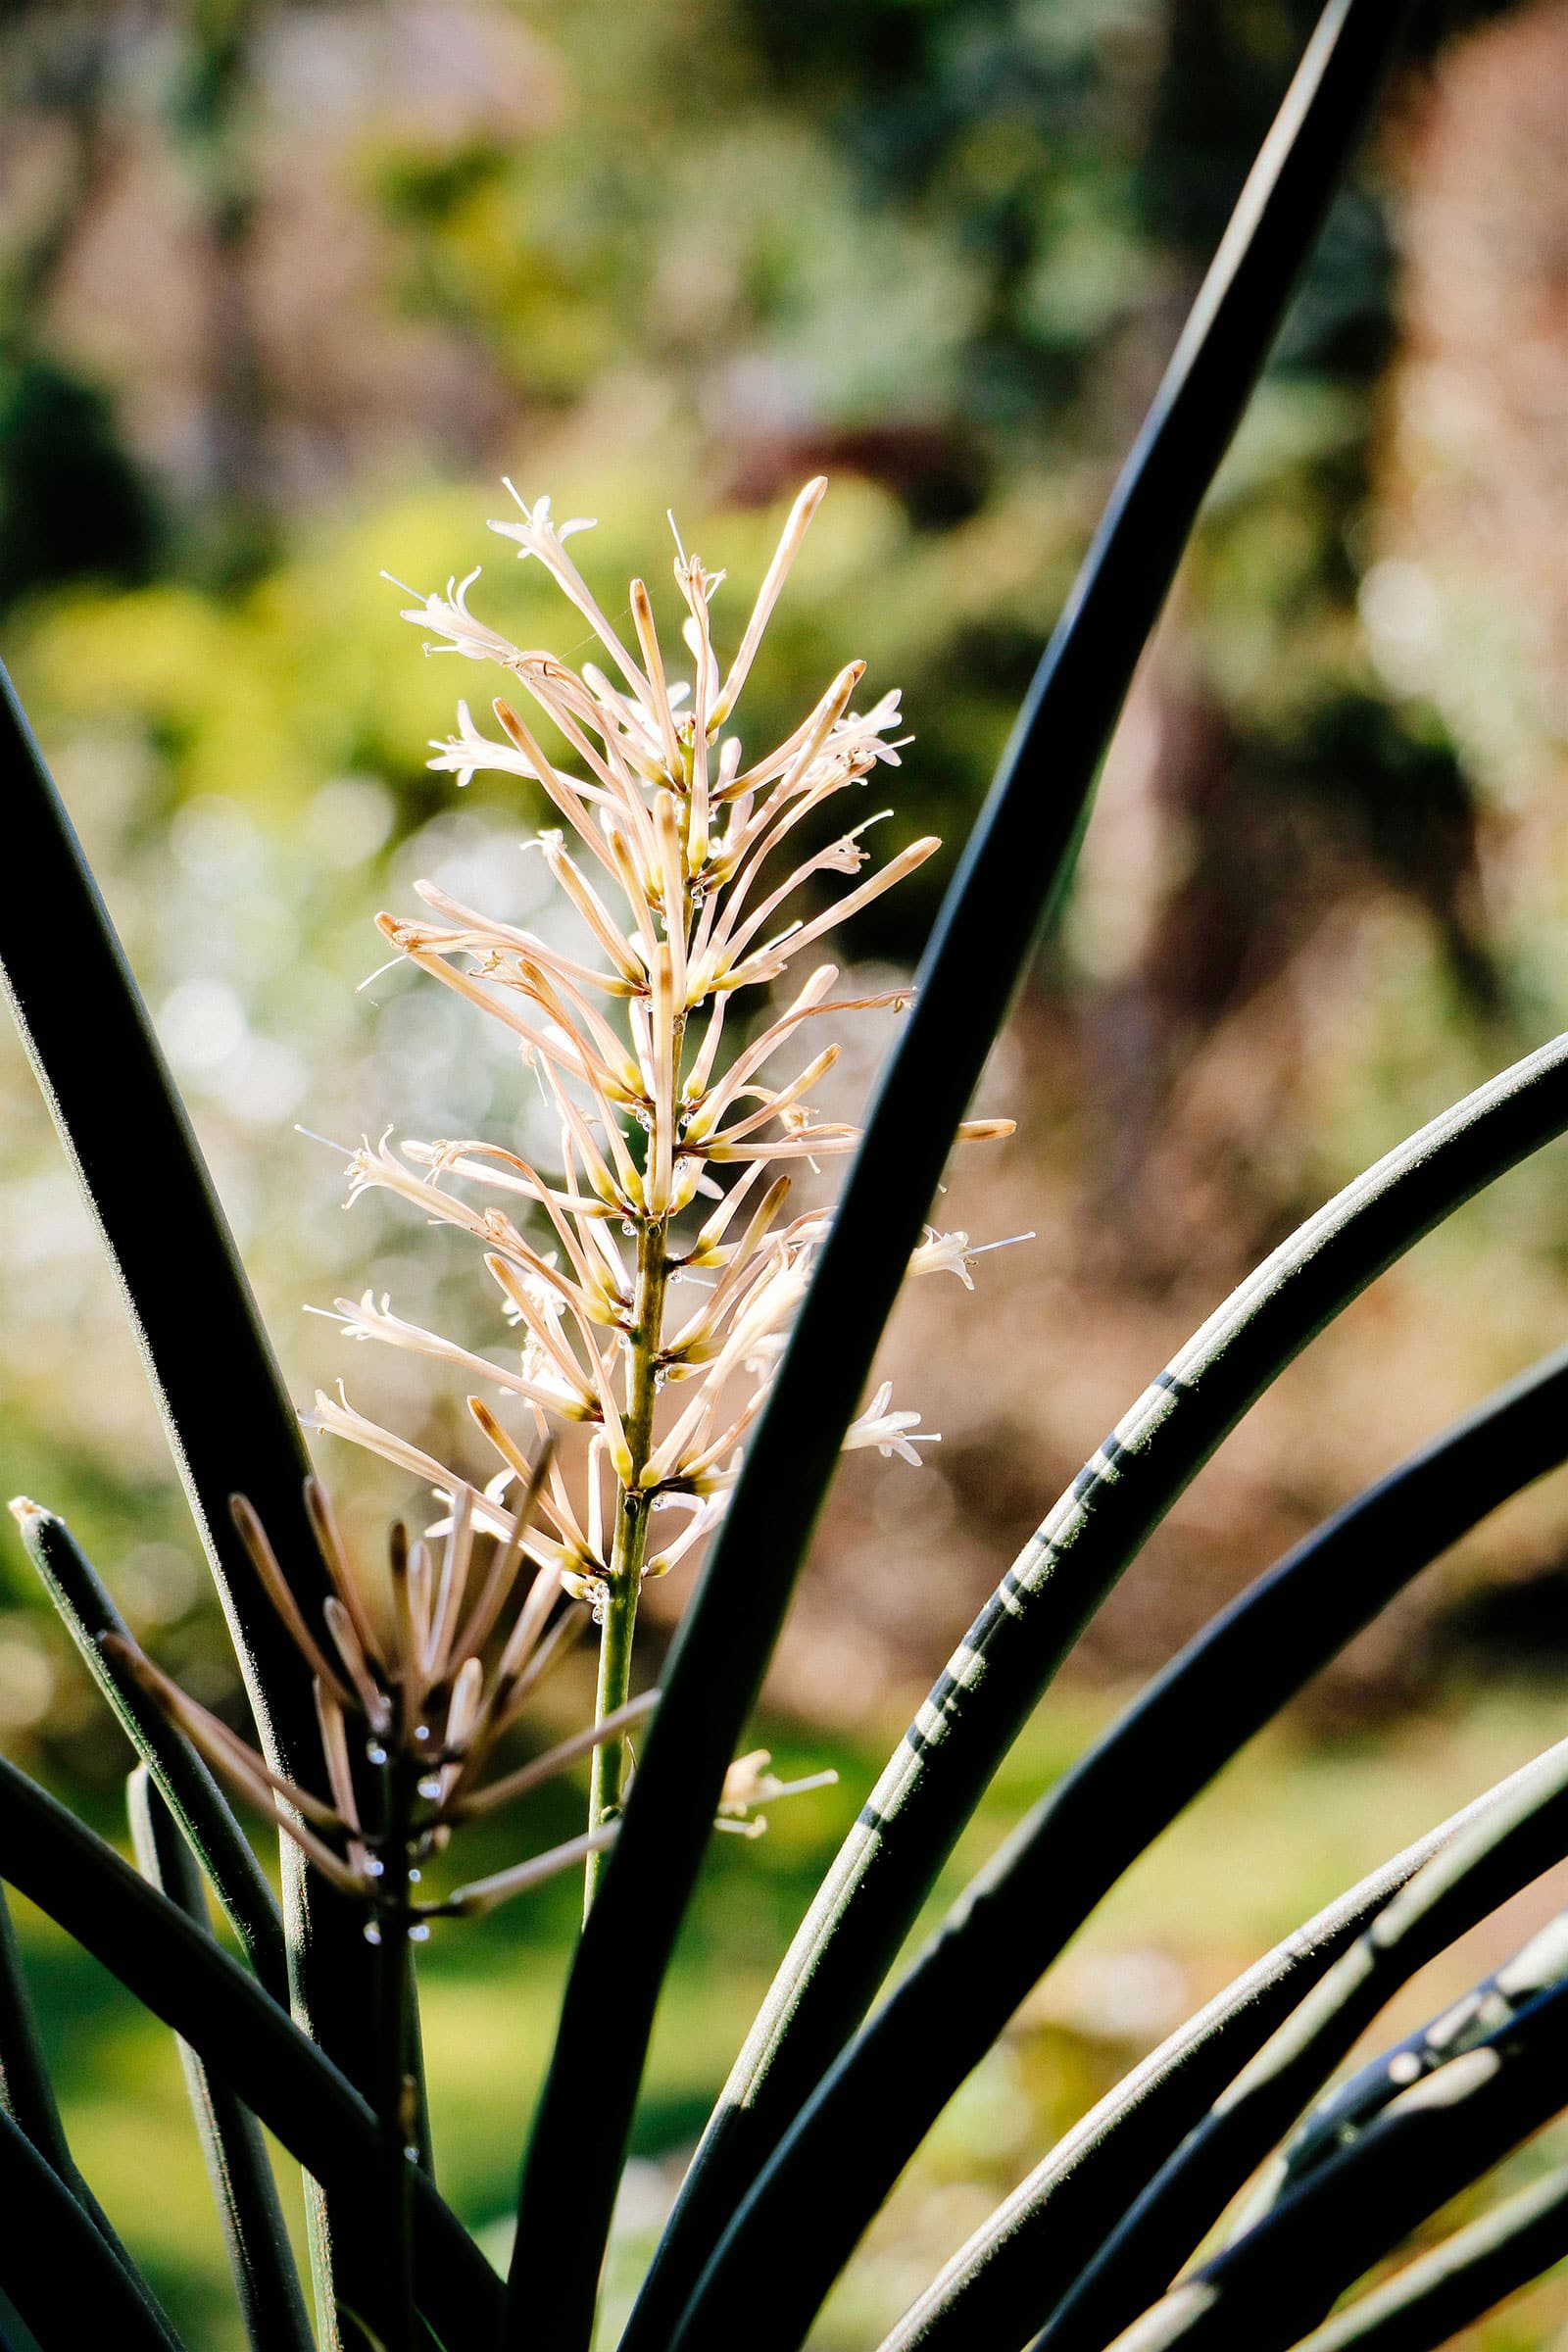 White bottlebrush-like flower on a Sansevieria cylindrica snake plant growing outside in the sun